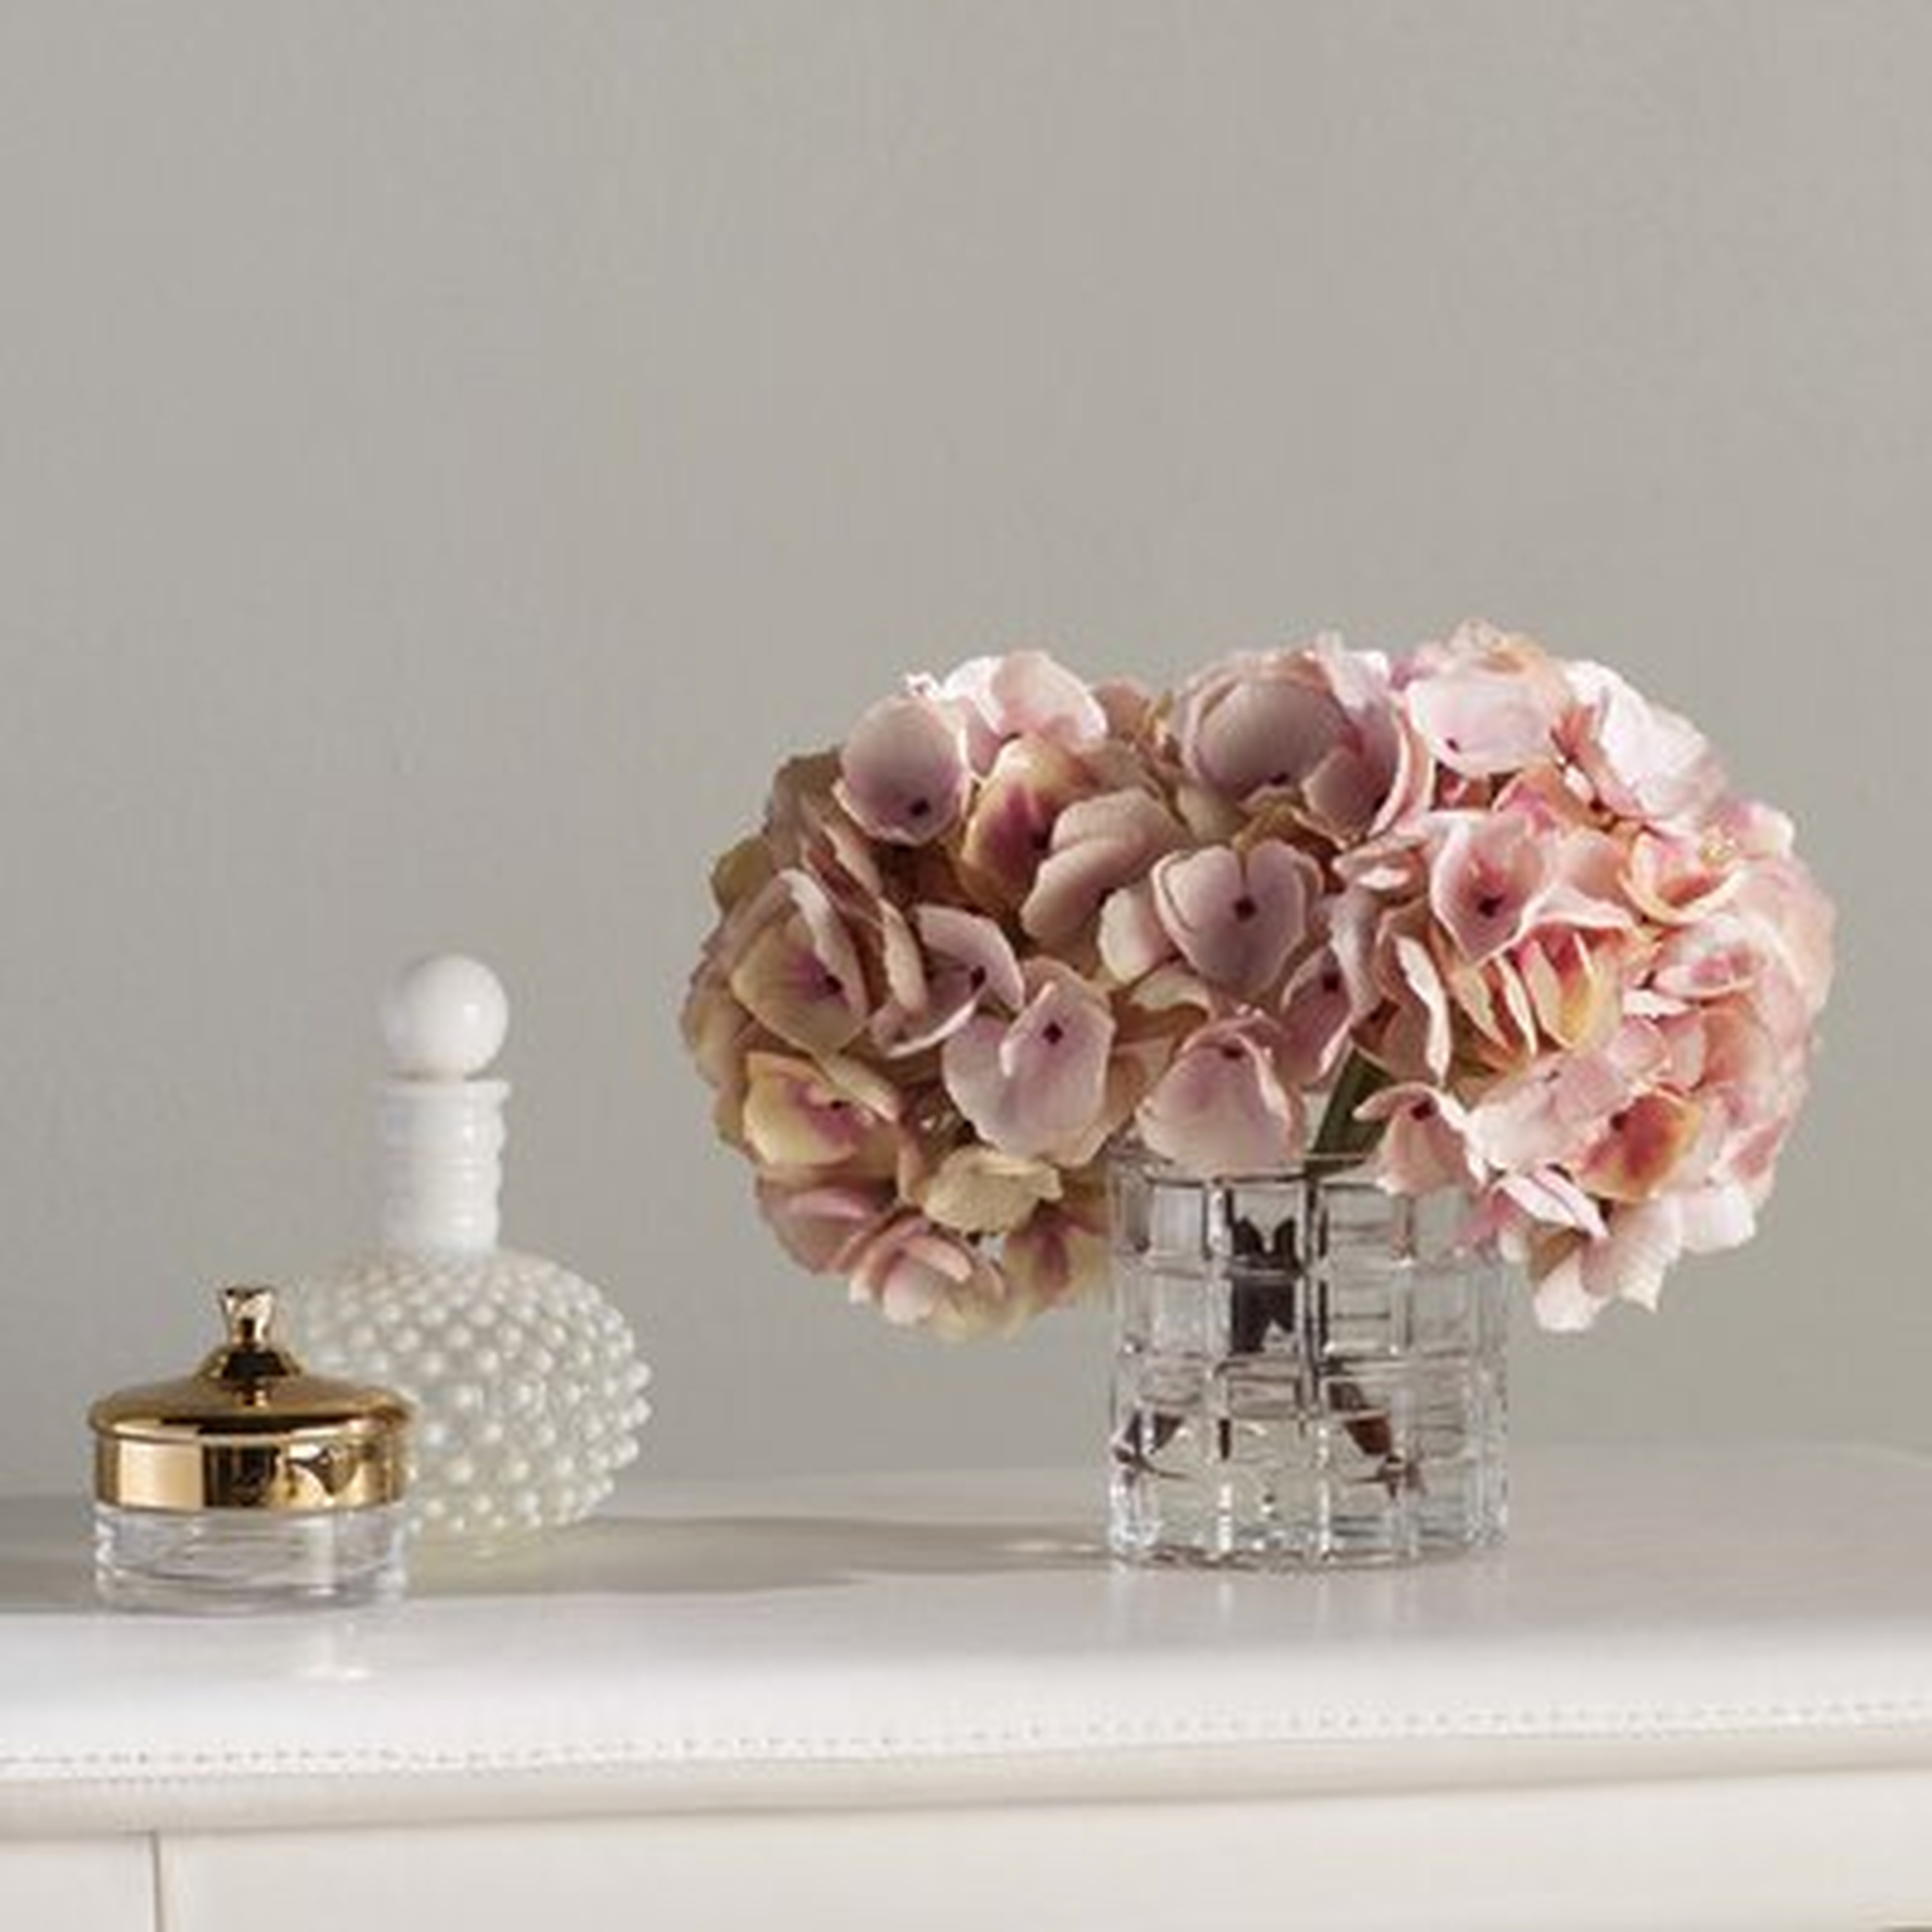 Soft Hydrangea Floral Arrangement in Vase - Birch Lane